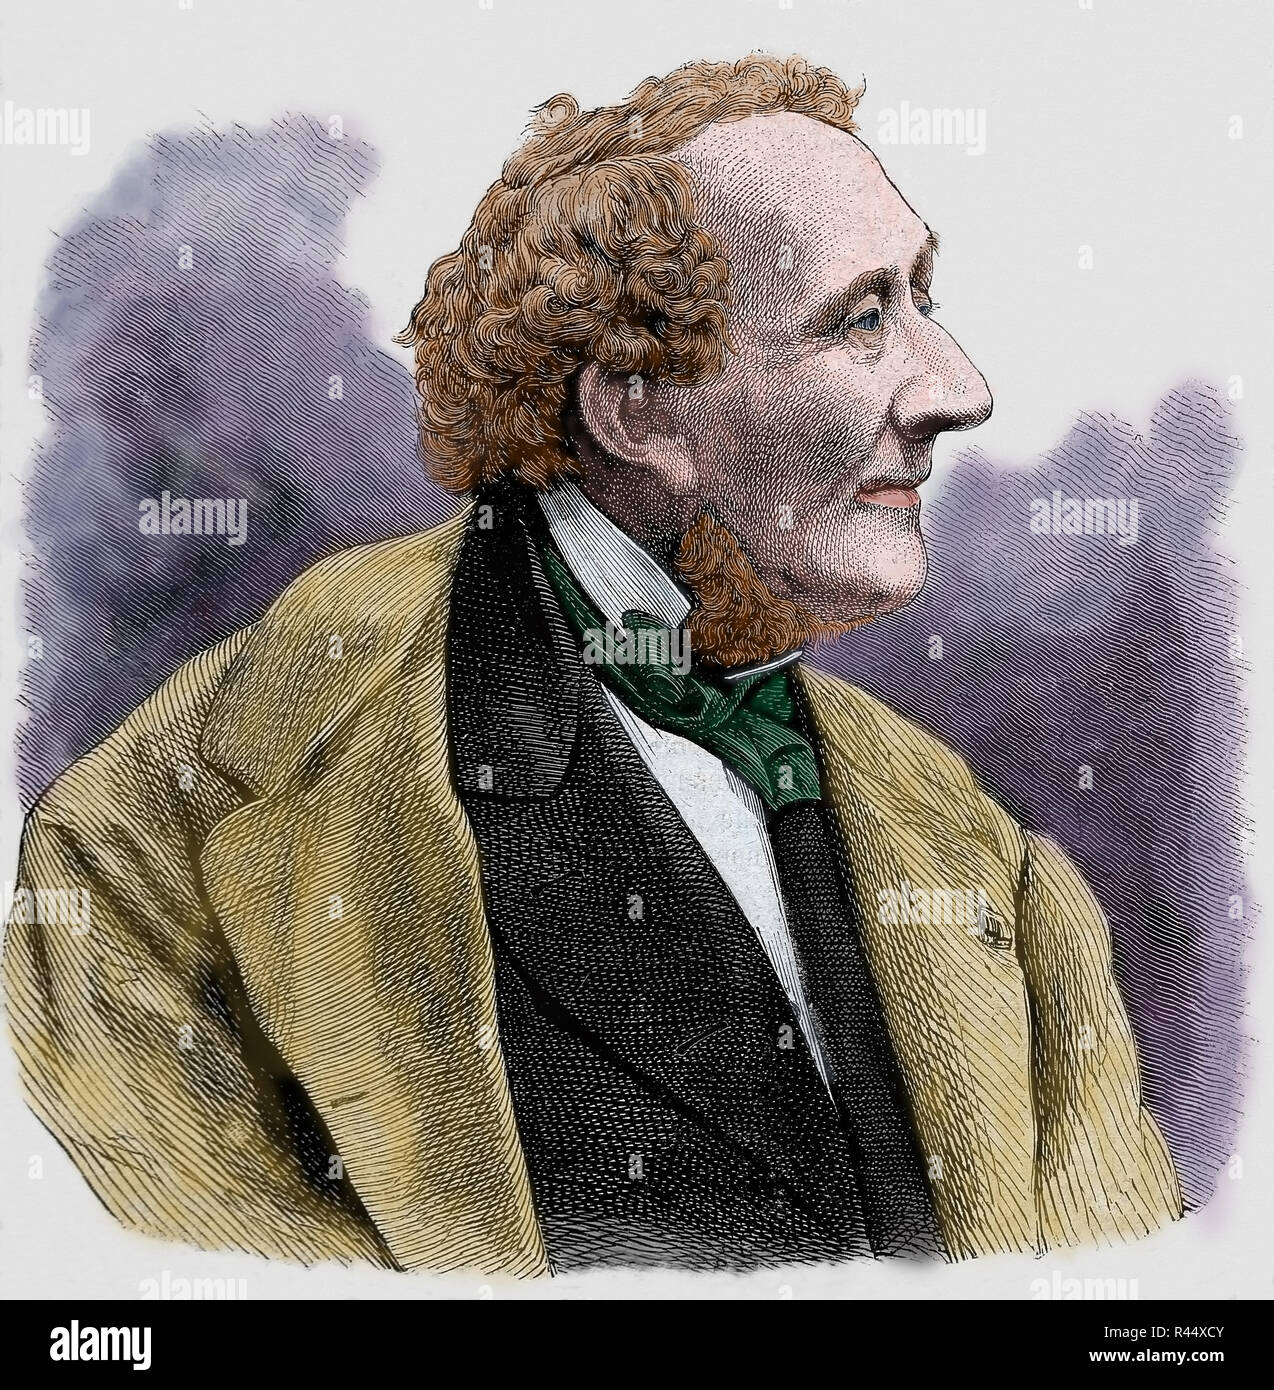 Hans-Christian Andersen (1805-1875) autore danese, prolifico scrittore di favole e famoso per le sue storie per bambini. Incisione. Colorazione successiva Foto Stock